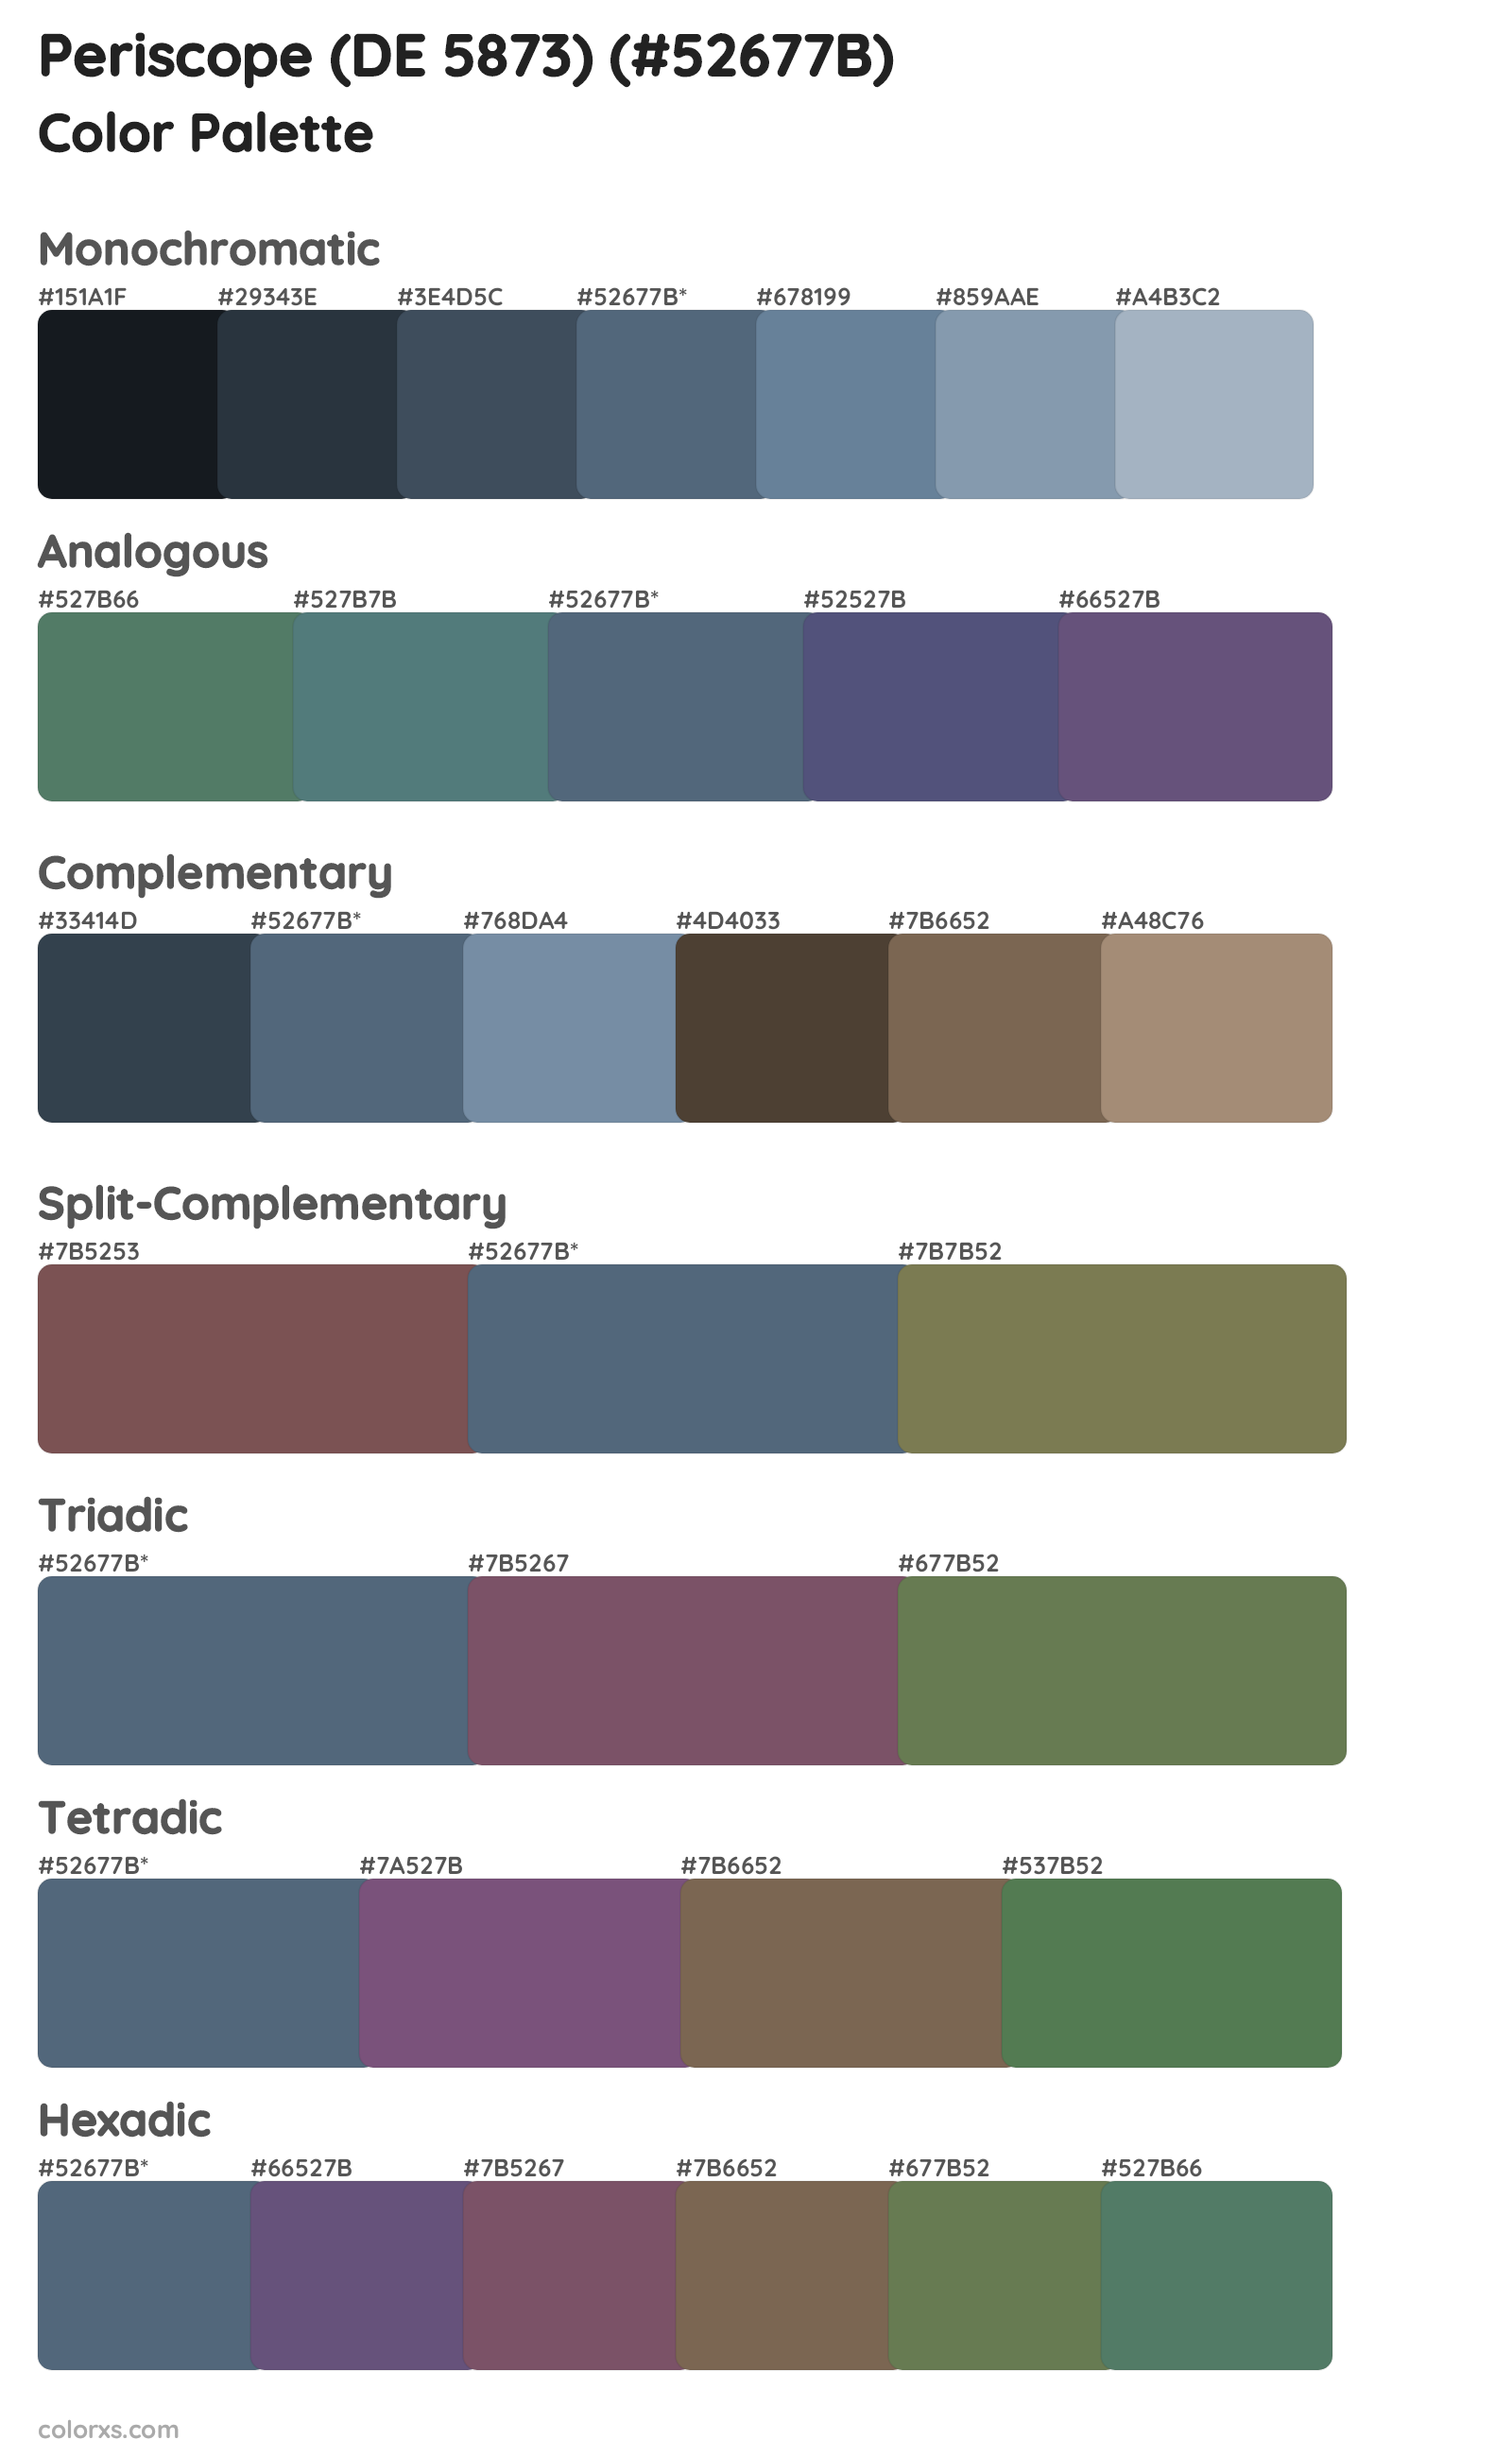 Periscope (DE 5873) Color Scheme Palettes